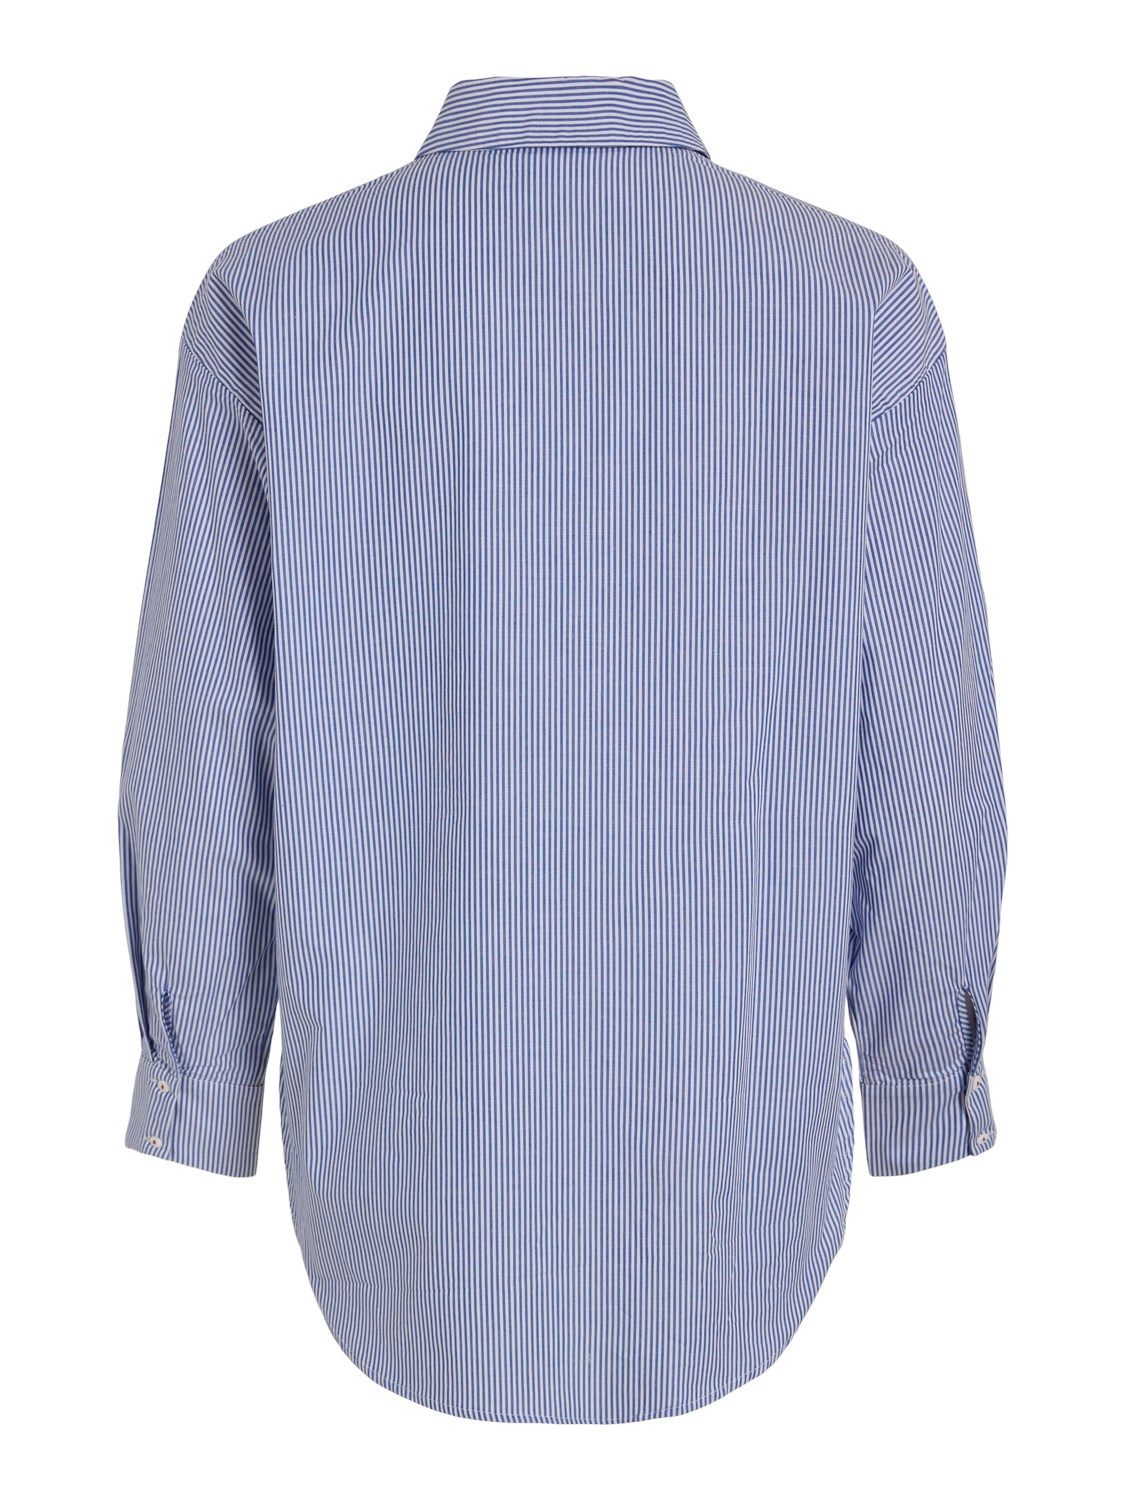 Camisa Patti de rayas azul y blanco, colección Paris de vila con golondrina. Modelo 14094219.